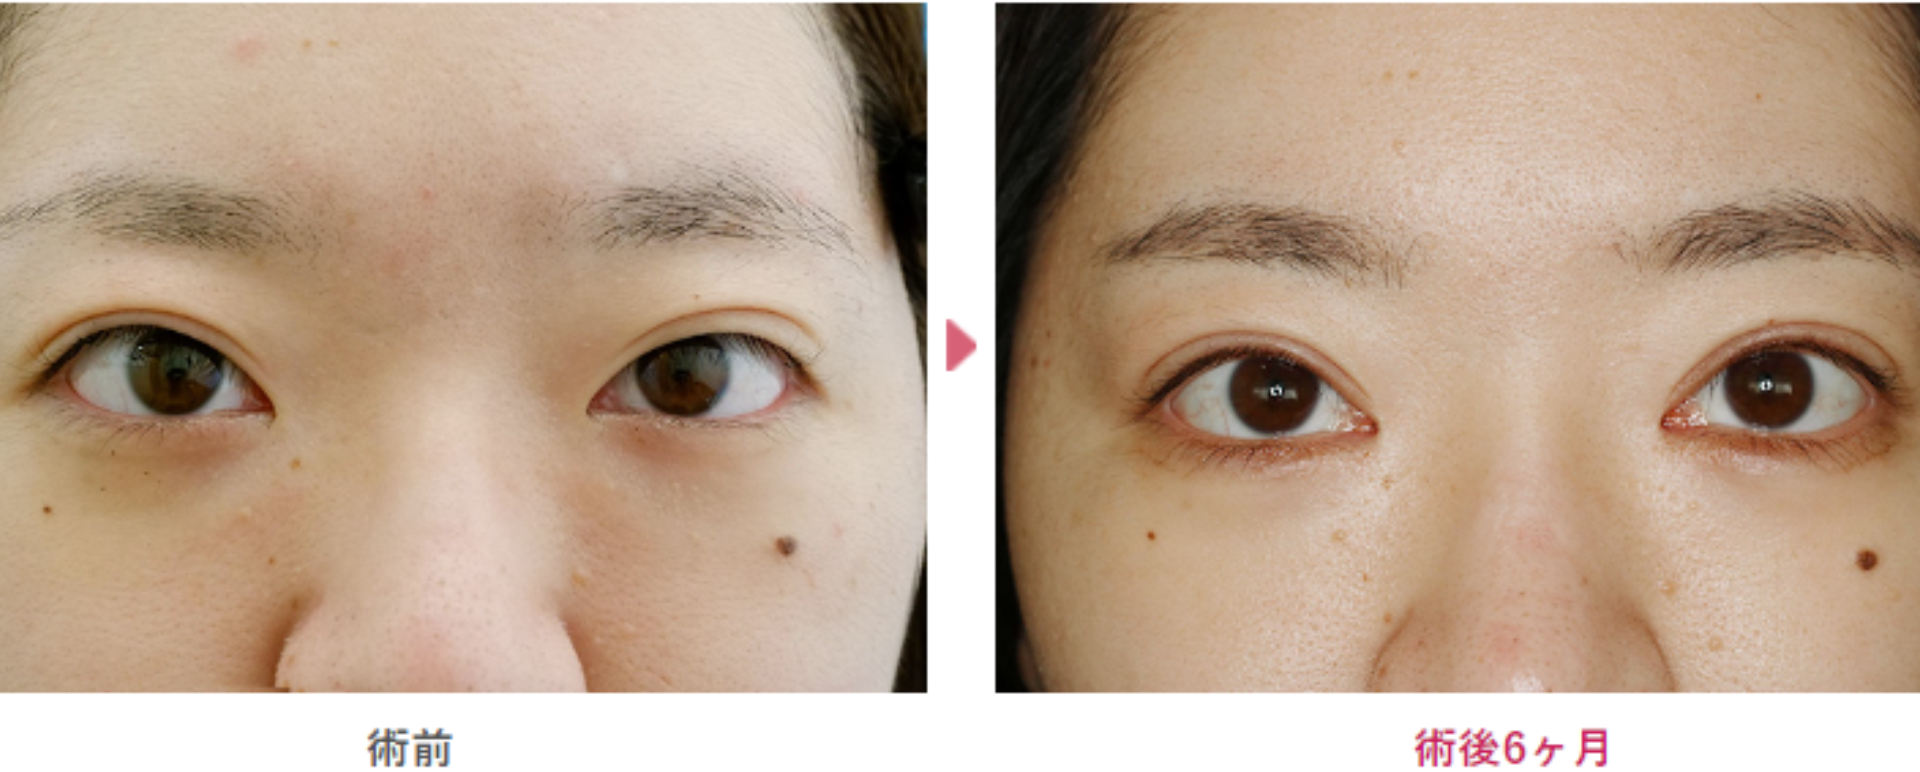 二重切開と目頭切開手術の術前と術直6ヶ月の見た目の変化を表す症例写真